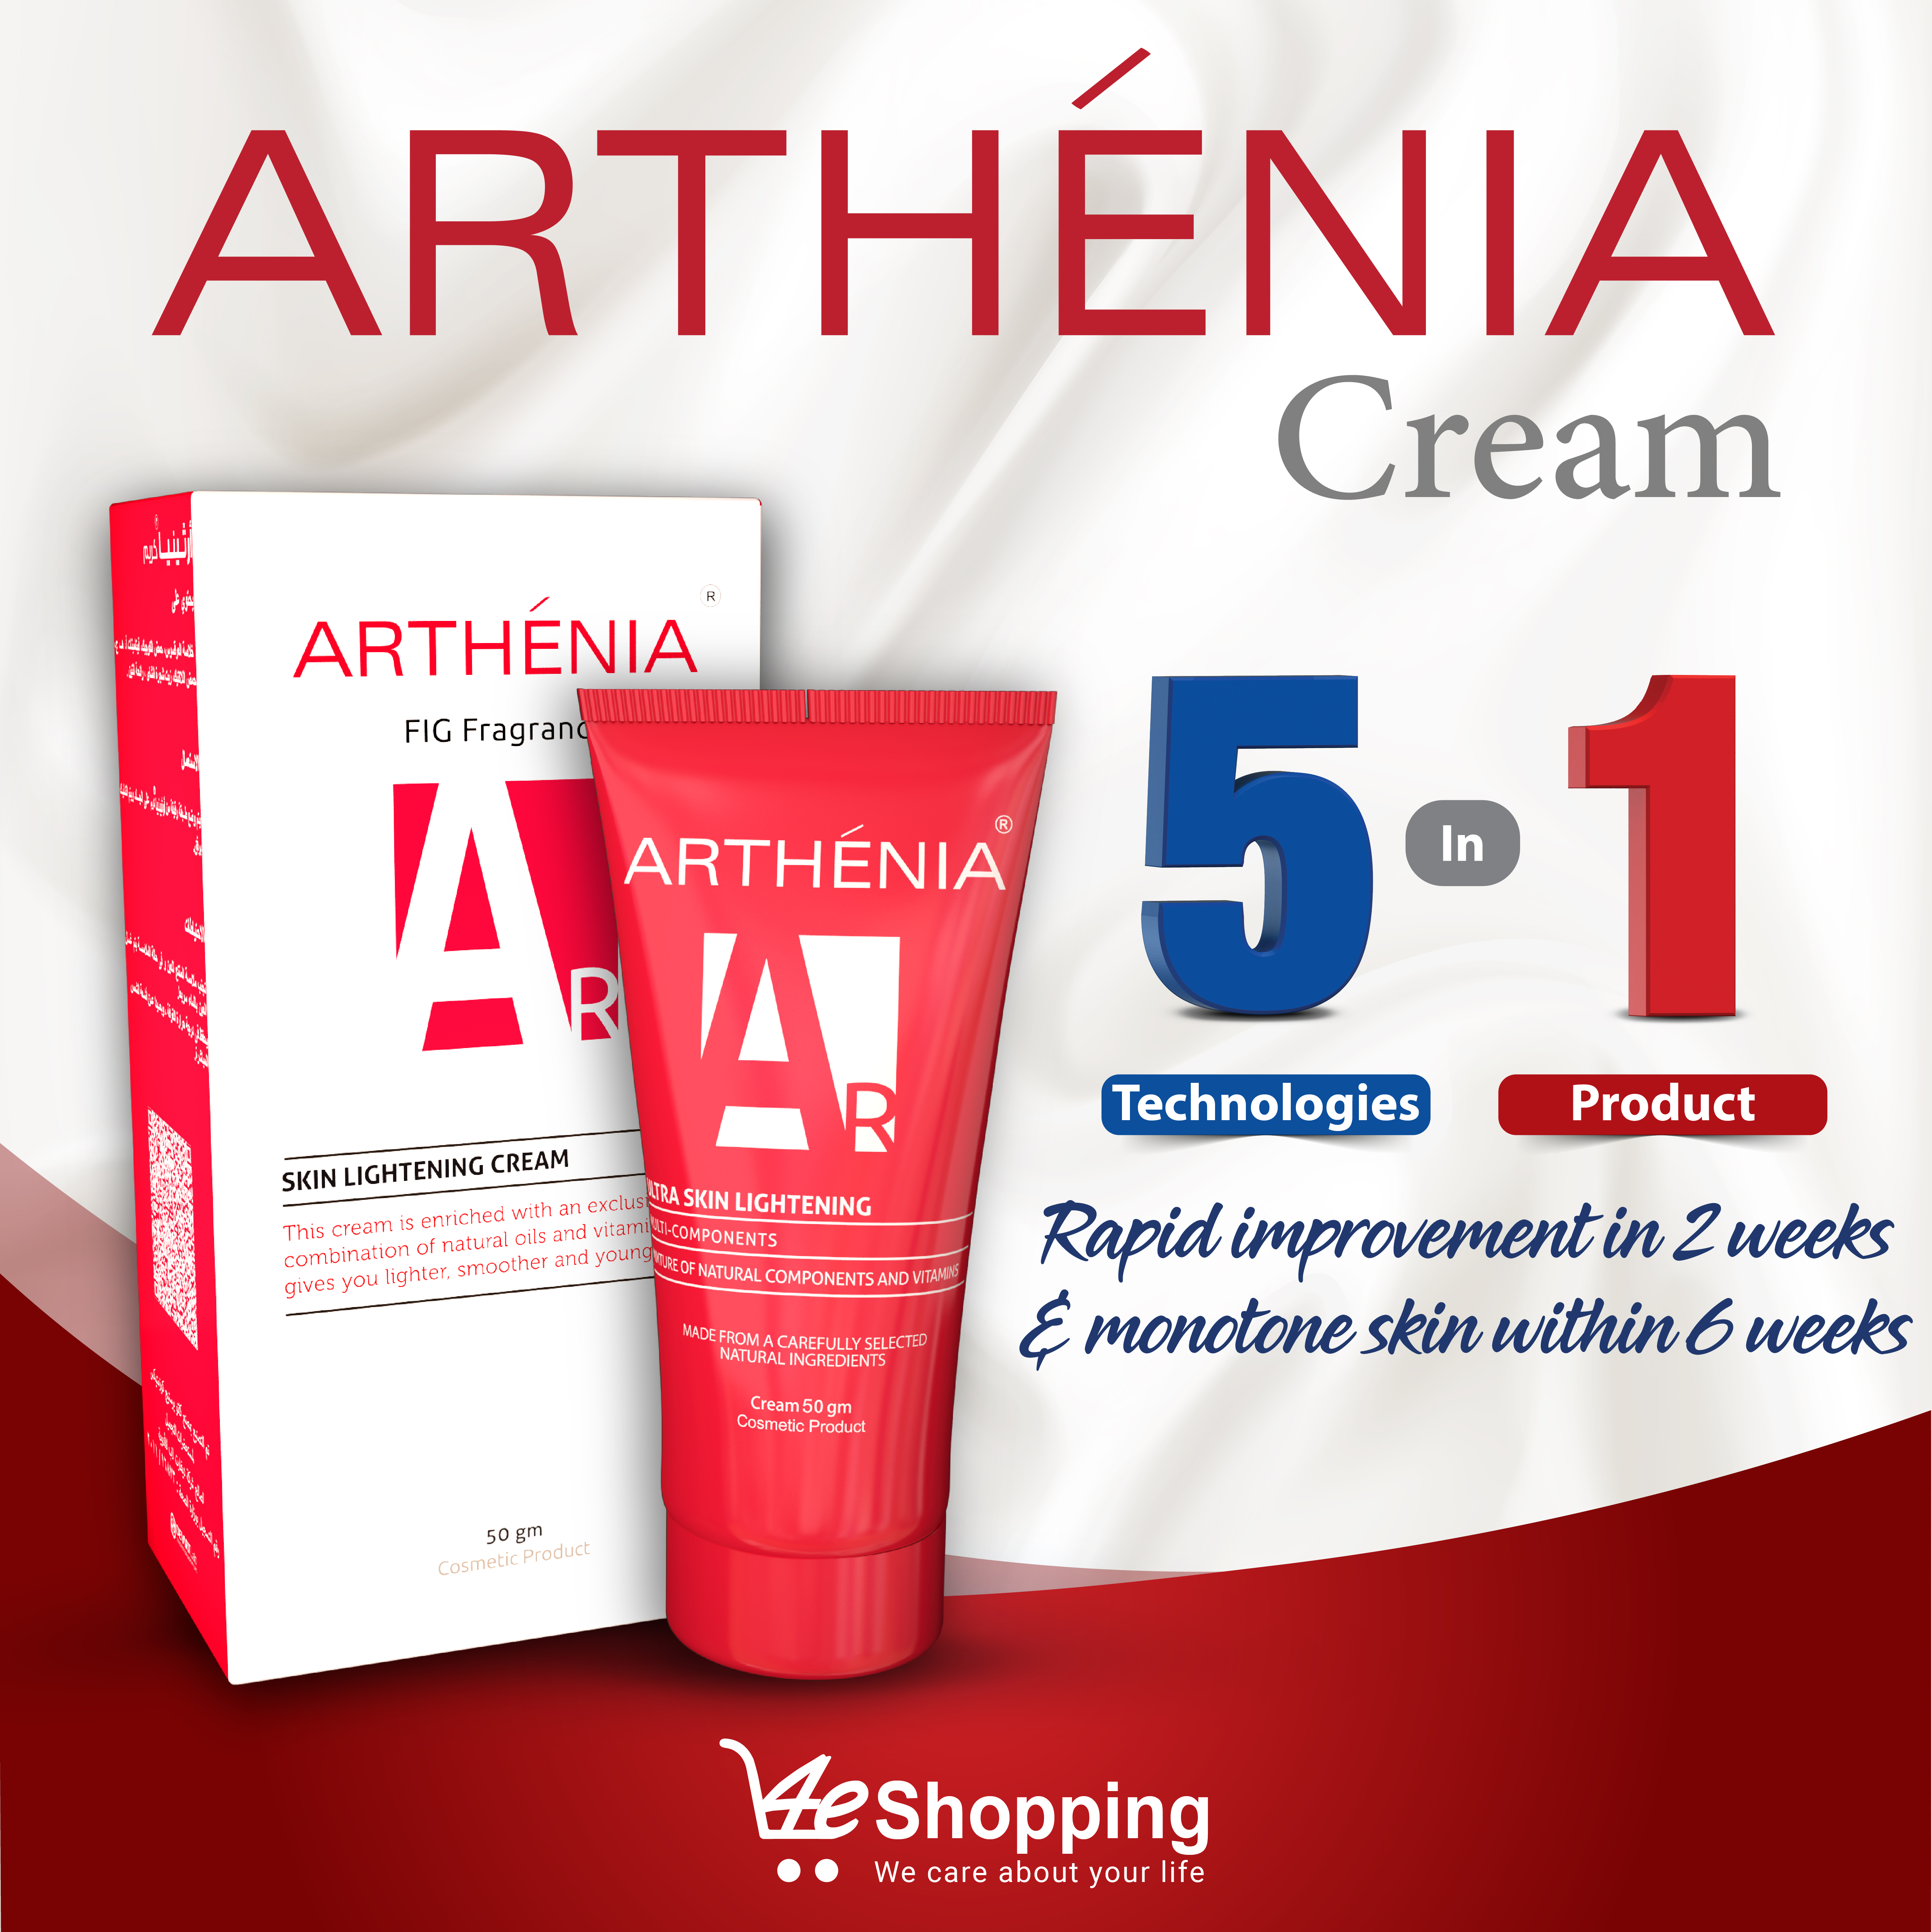 Arthenia Cream